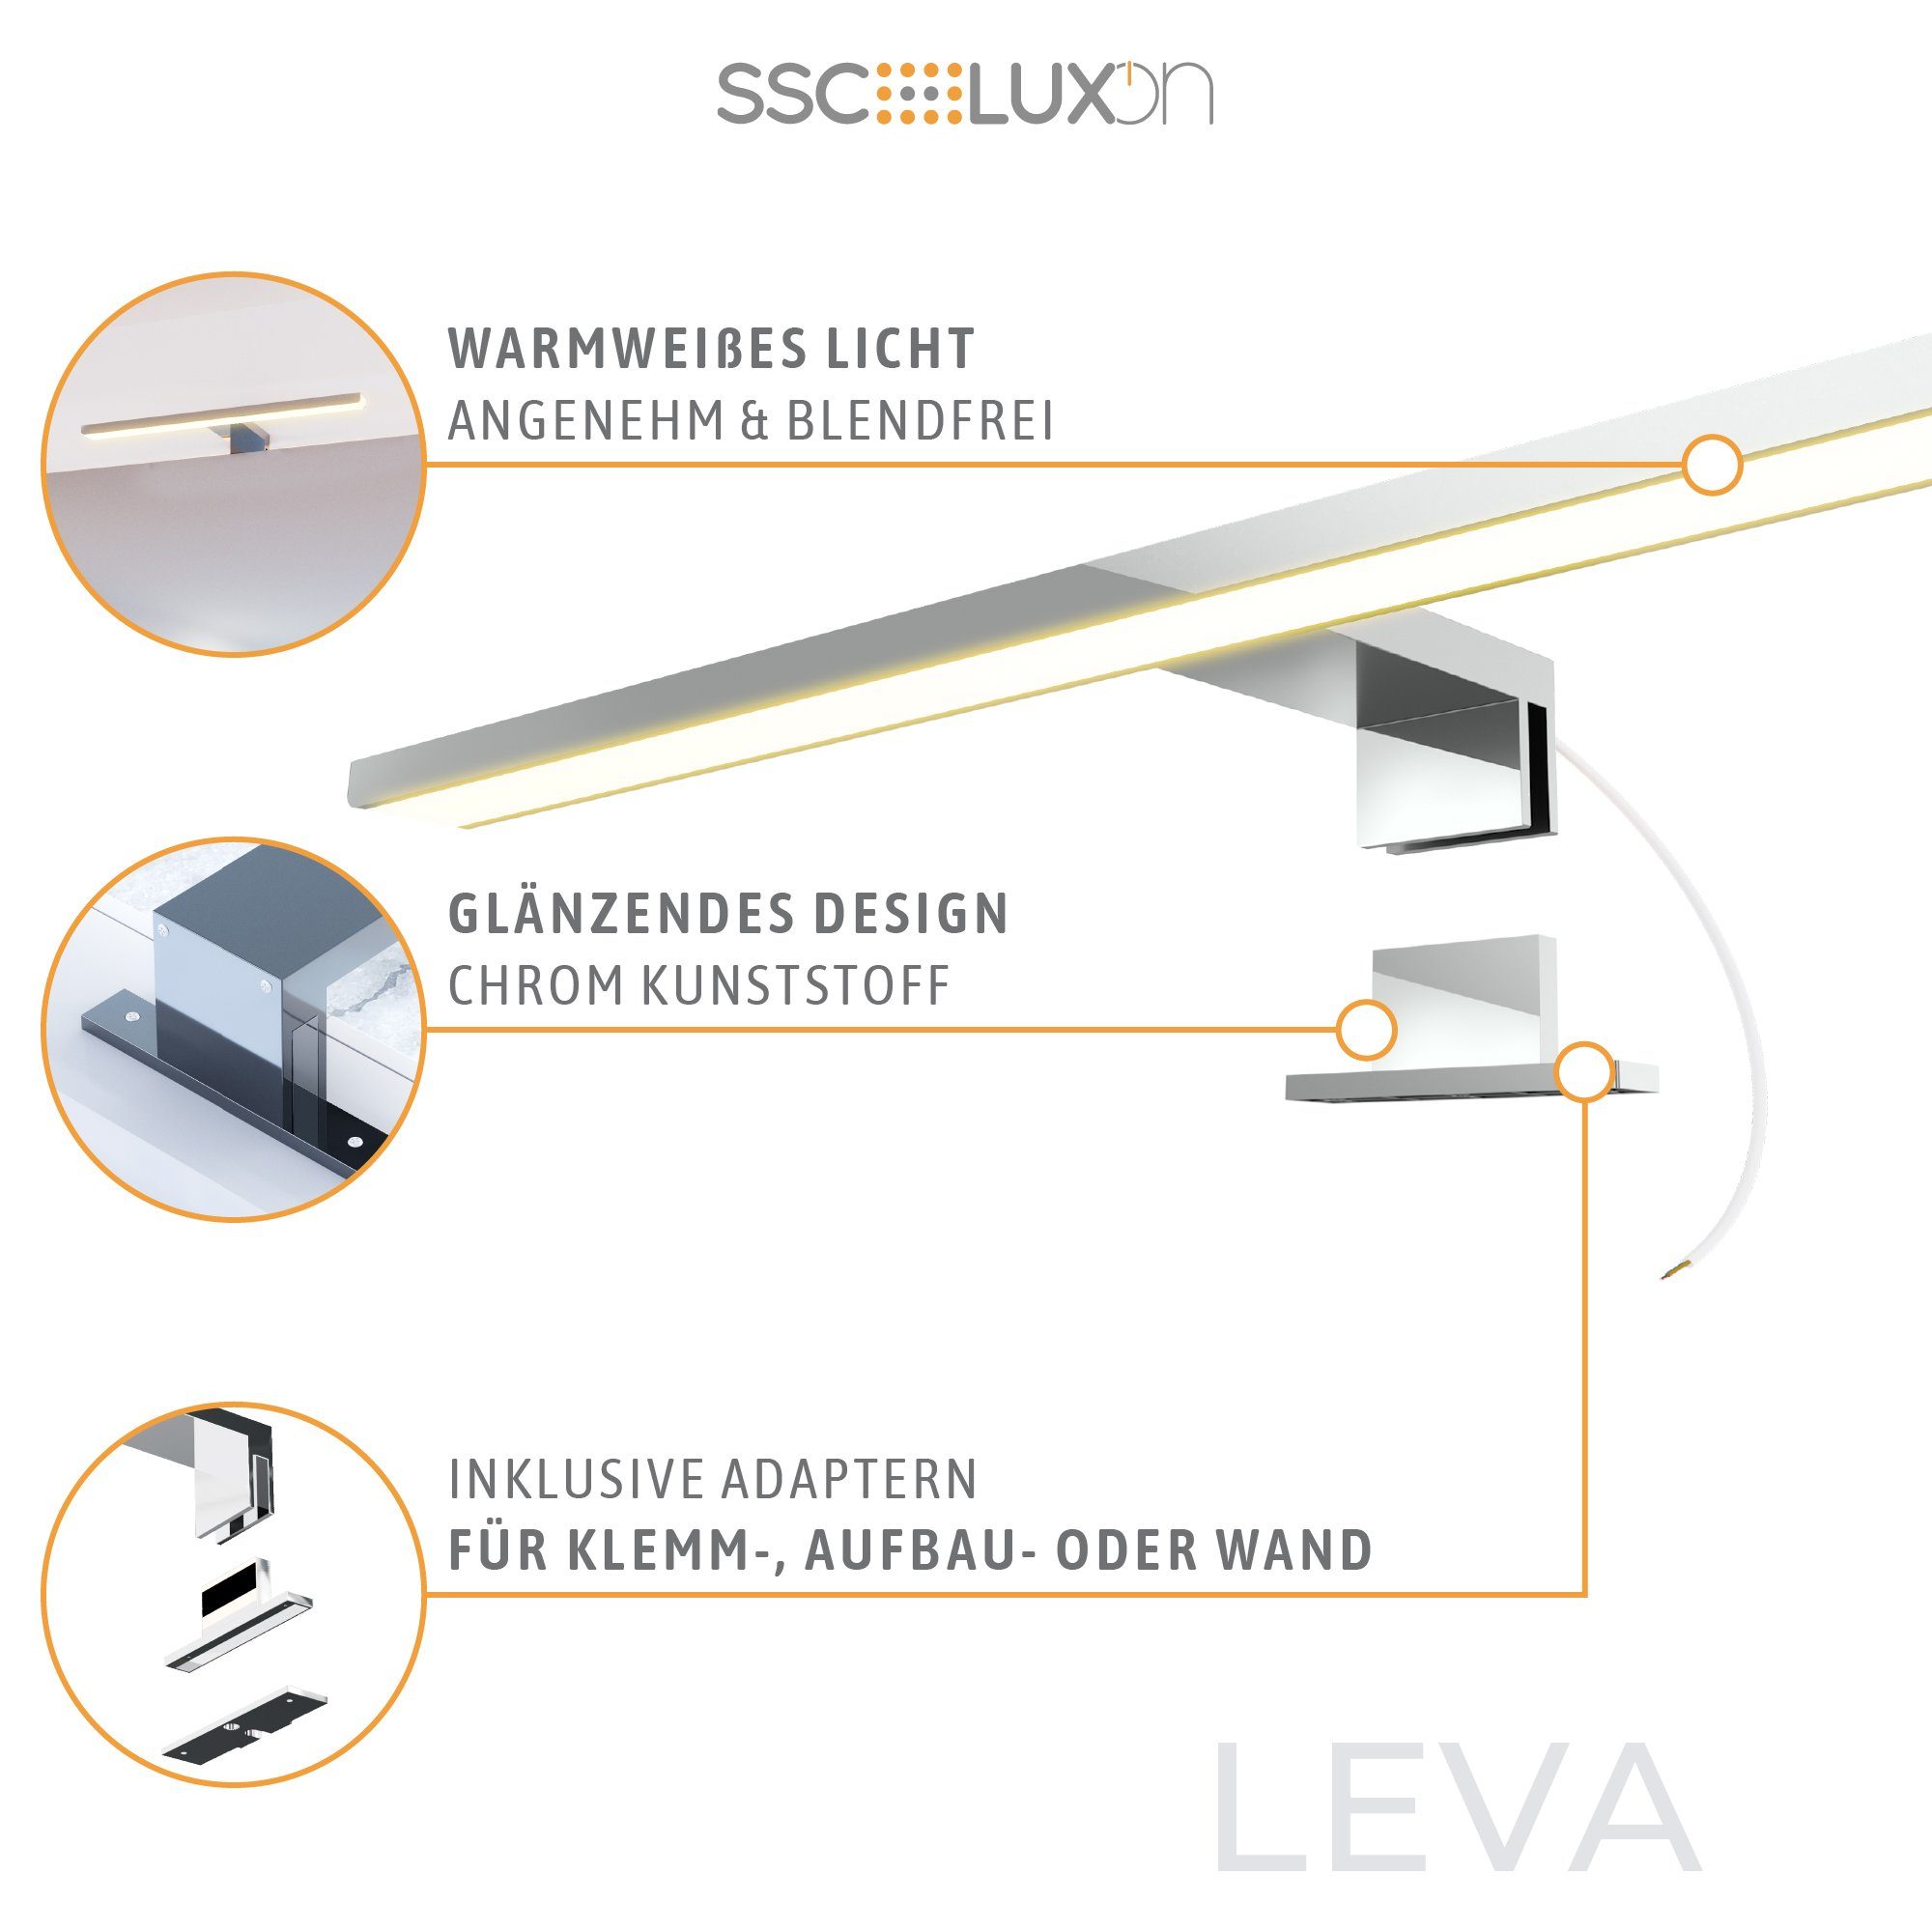 SSC-LUXon Bilderleuchte warmweiss 3-in-1 Warmweiß Bad 230V Design LED LEVA 9W LED 50cm Spiegelleuchte IP44,